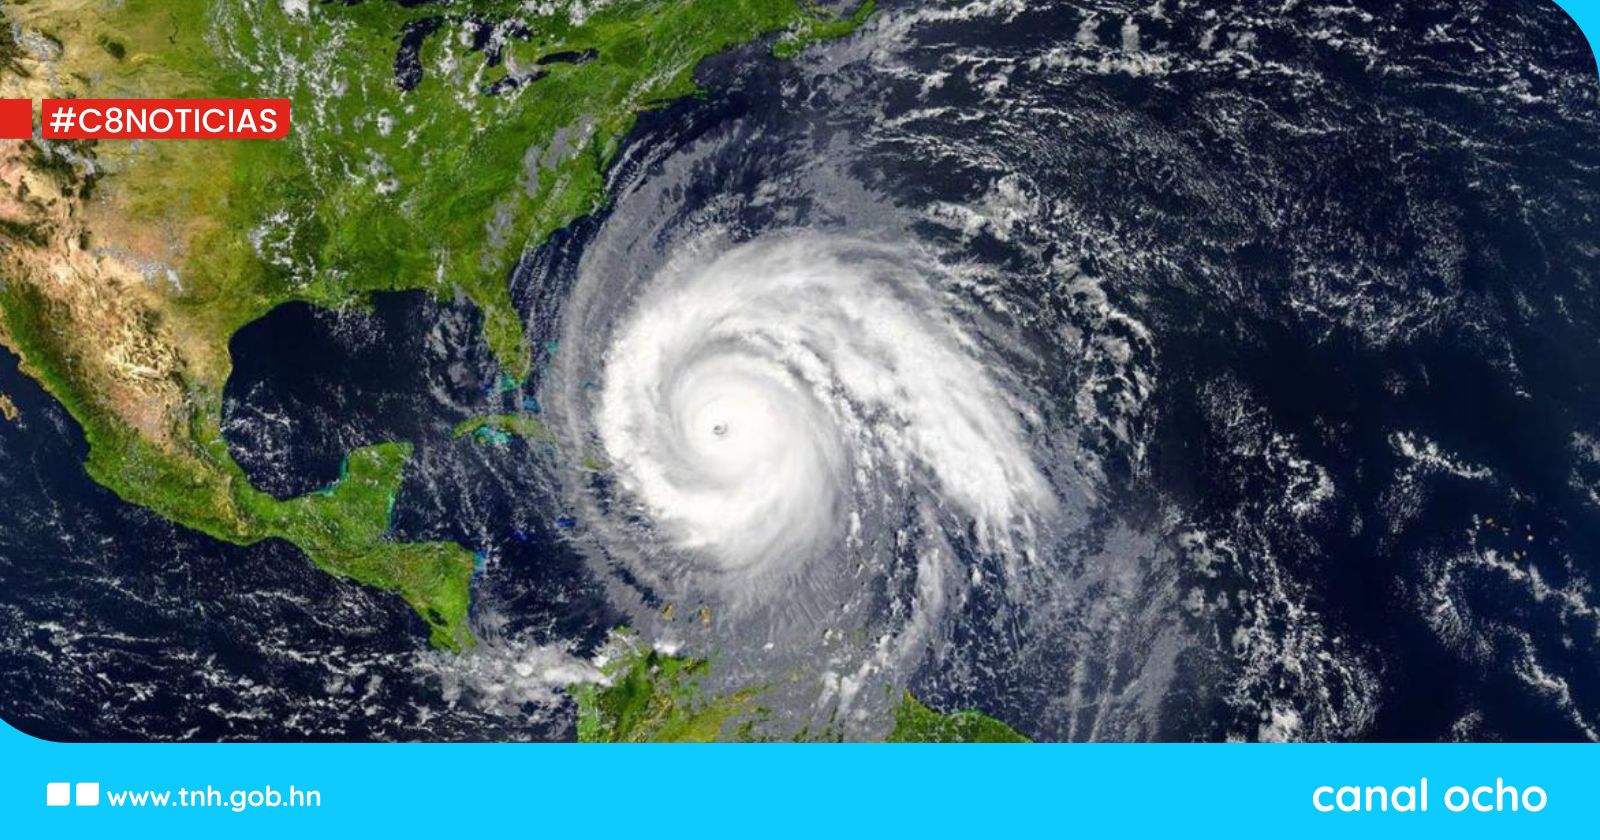 Honduras insta a la población a prepararse ante nueva temporada de huracanes en Atlántico